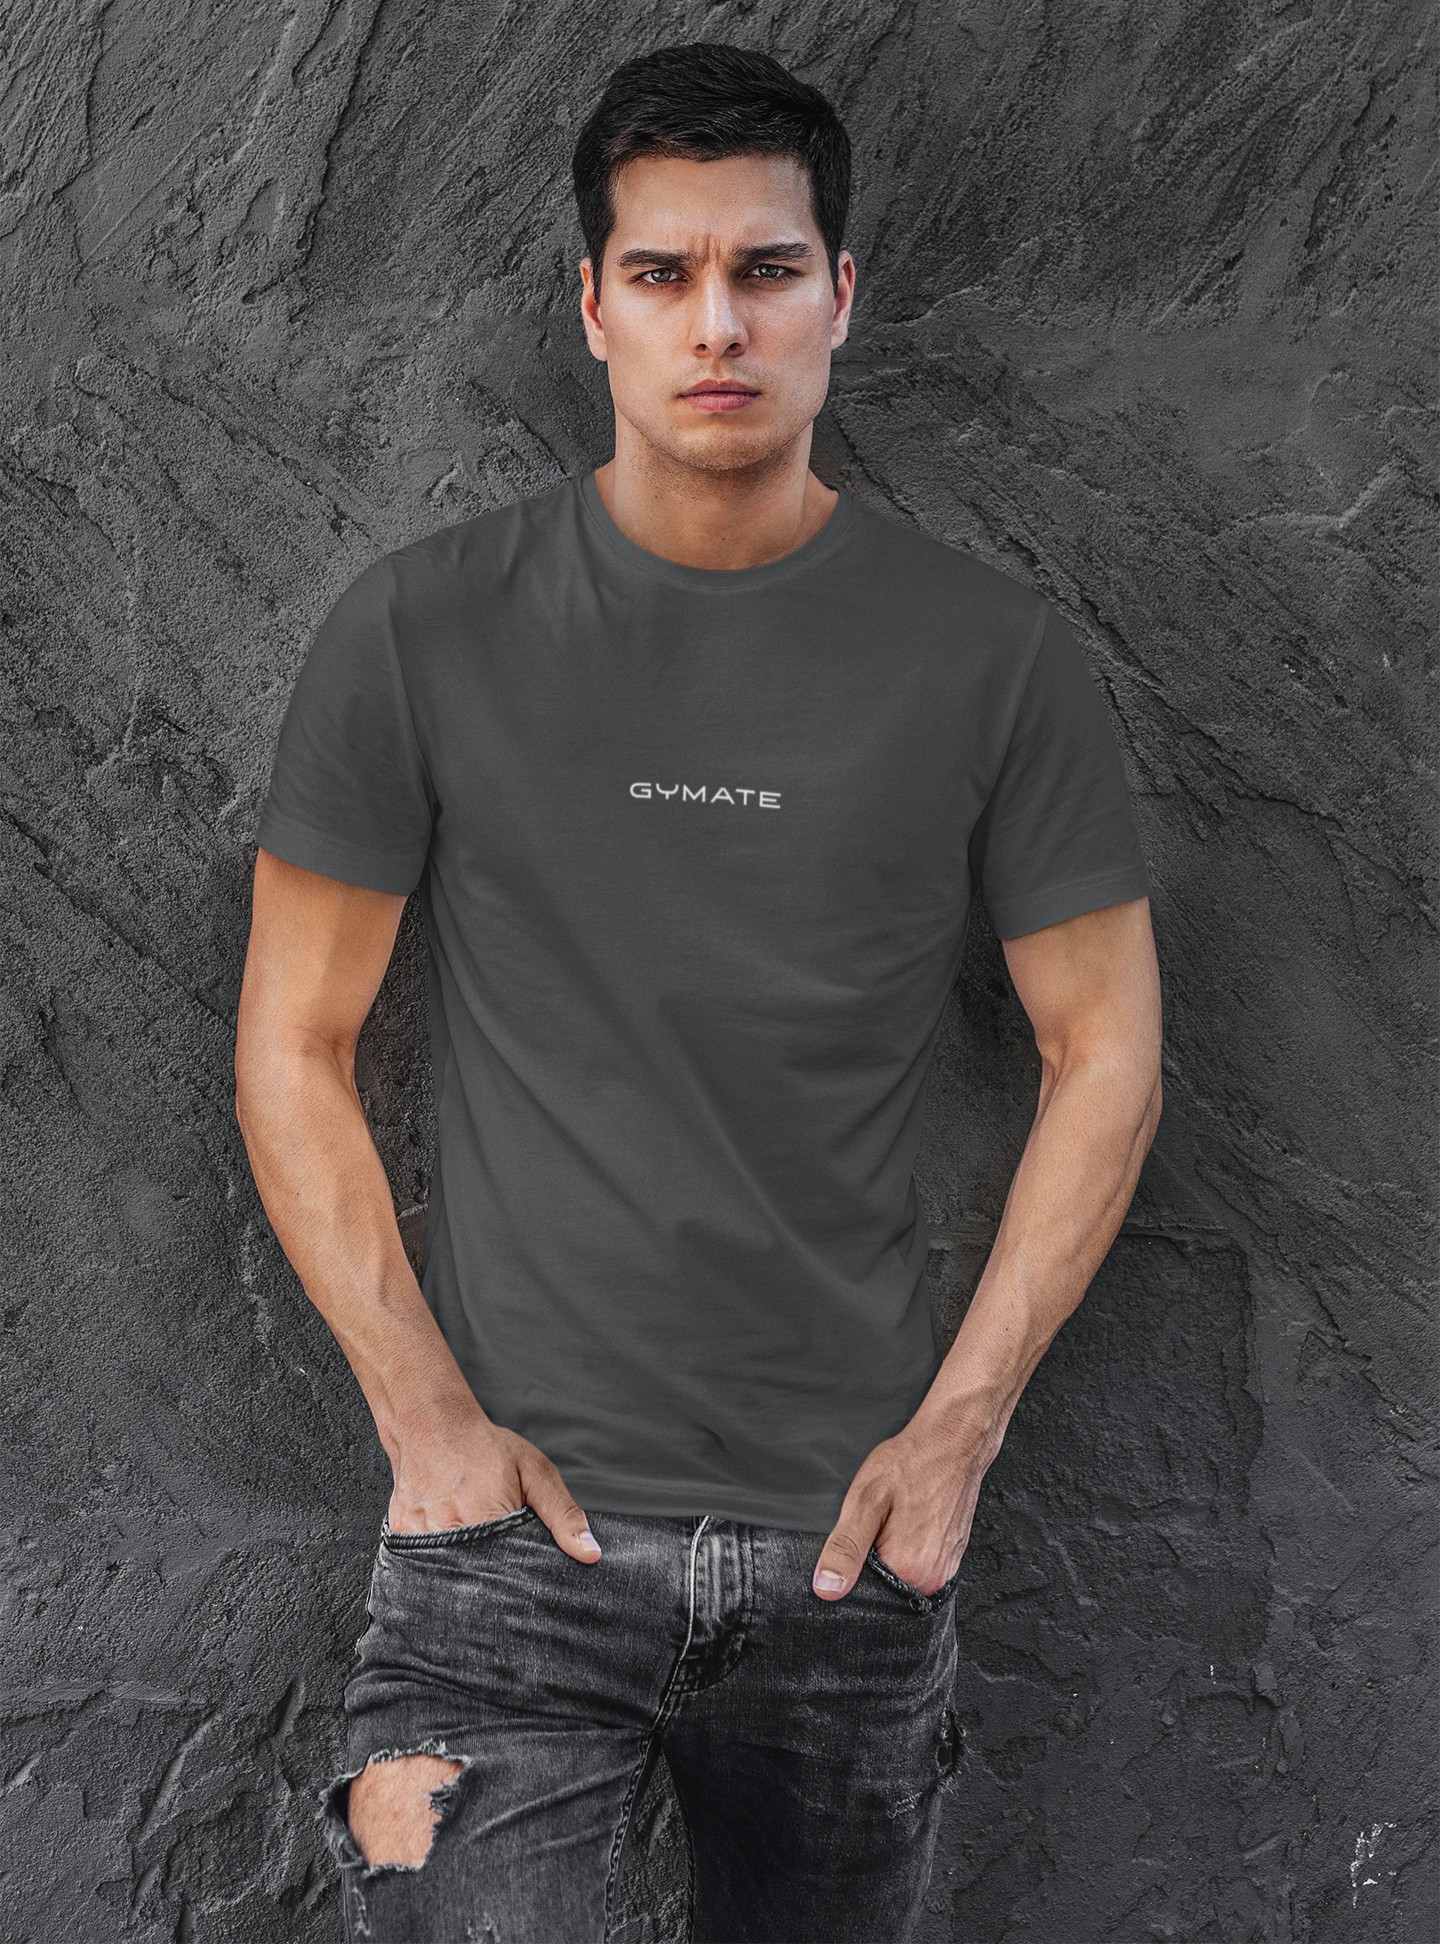 Designer mens T shirts Original Gymate sml/ctr dark grey